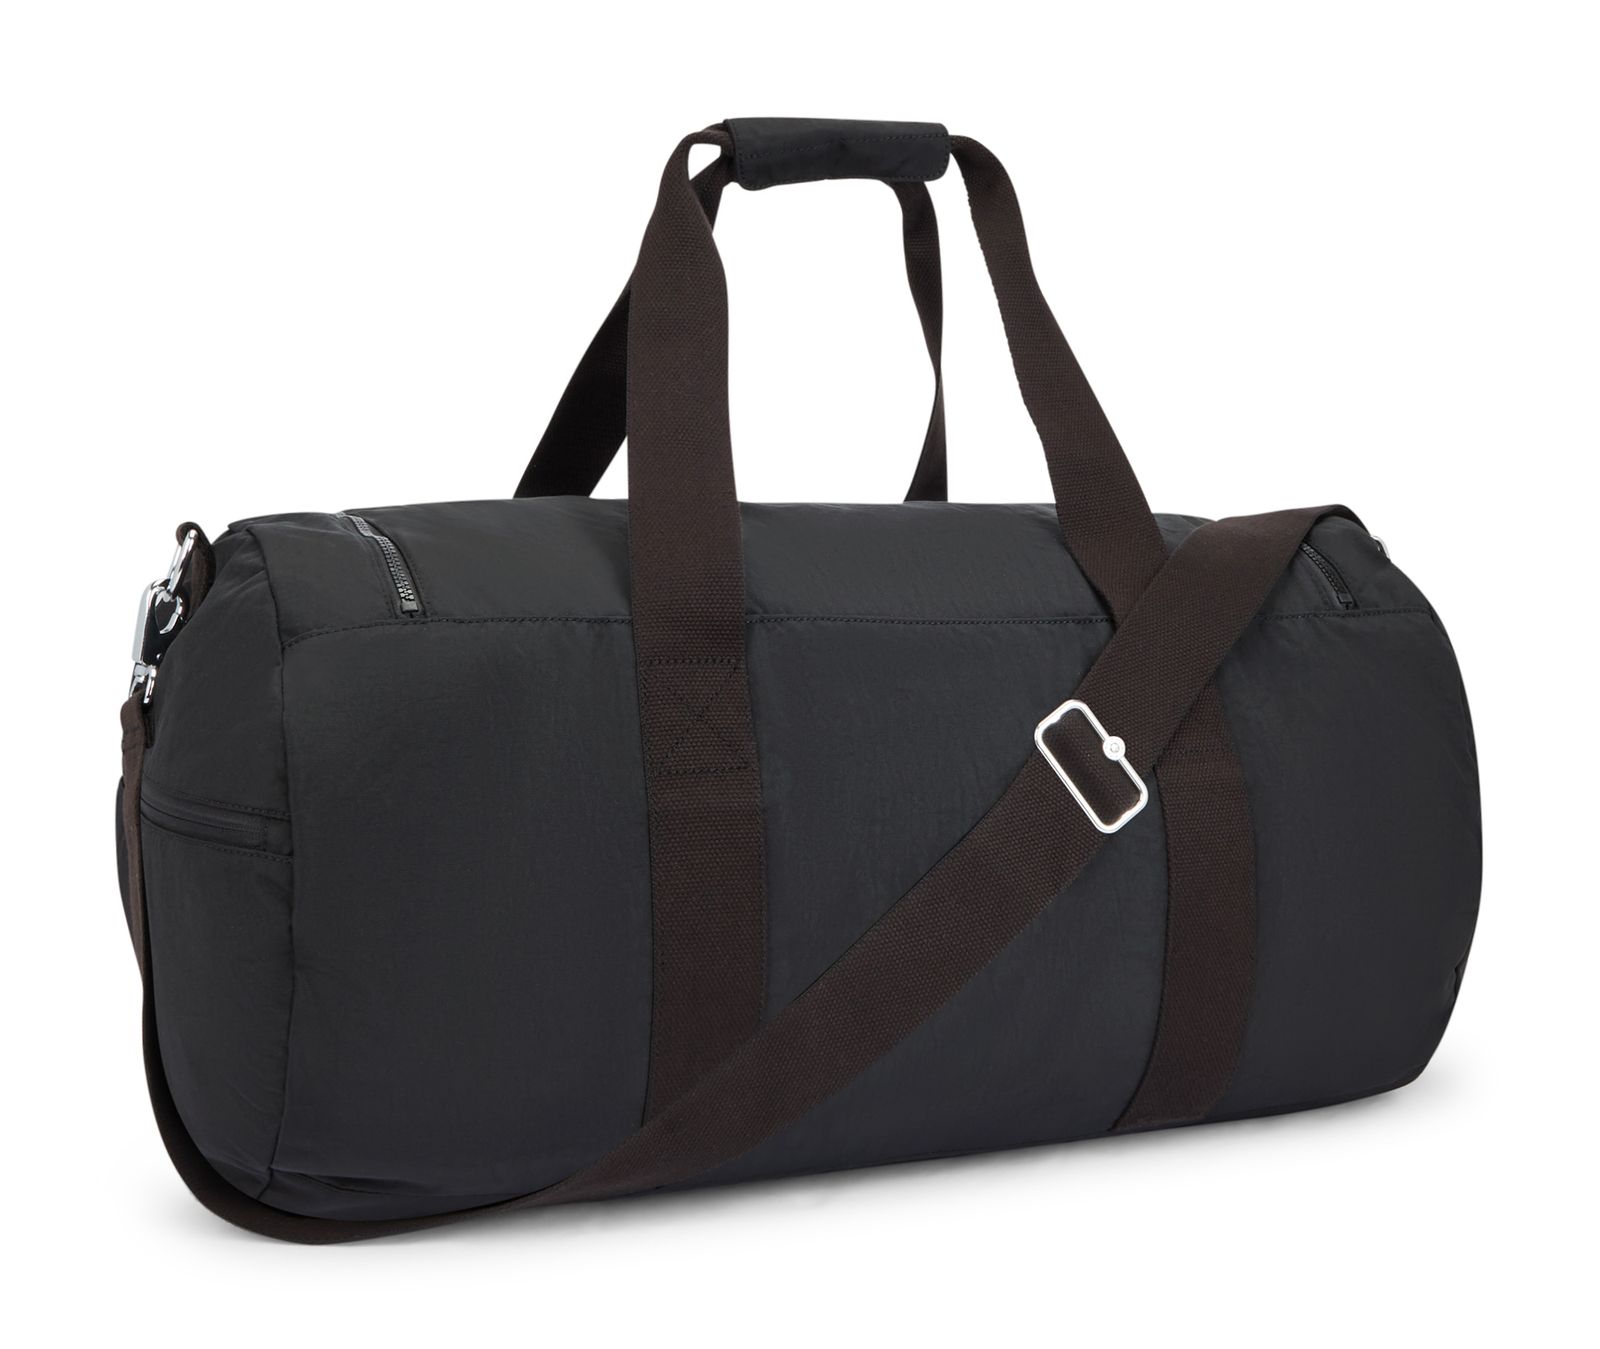 kipling Large Weekender M Black Noir | Buy bags, purses & accessories ...